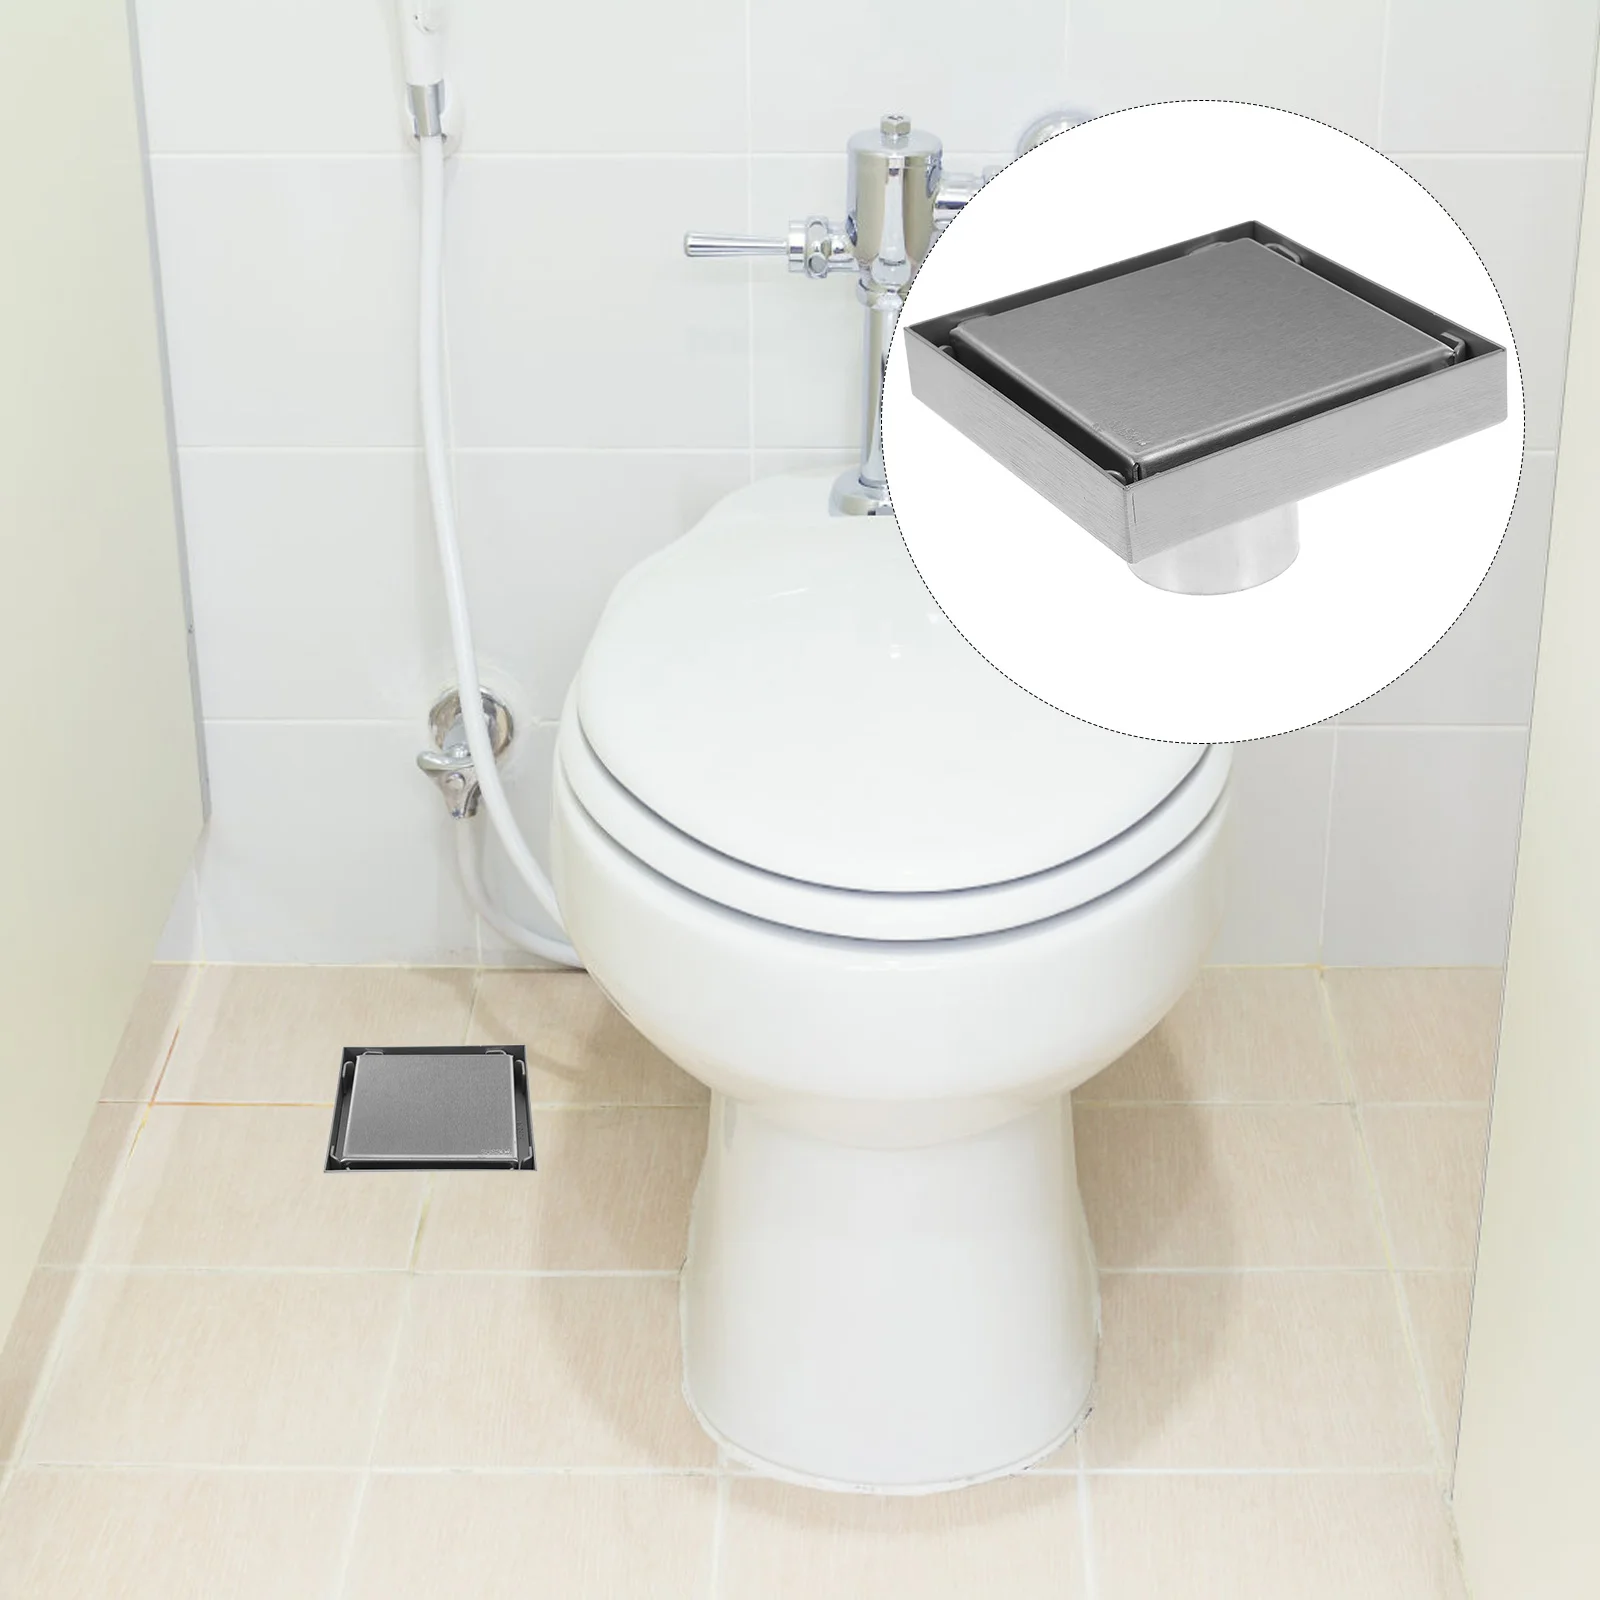 

Drain Shower Floor Cover Hair Catcher Stopper Bathroom Square Flat Strainer Insert Kitchen Covers Base Pool Tile Plug Basement